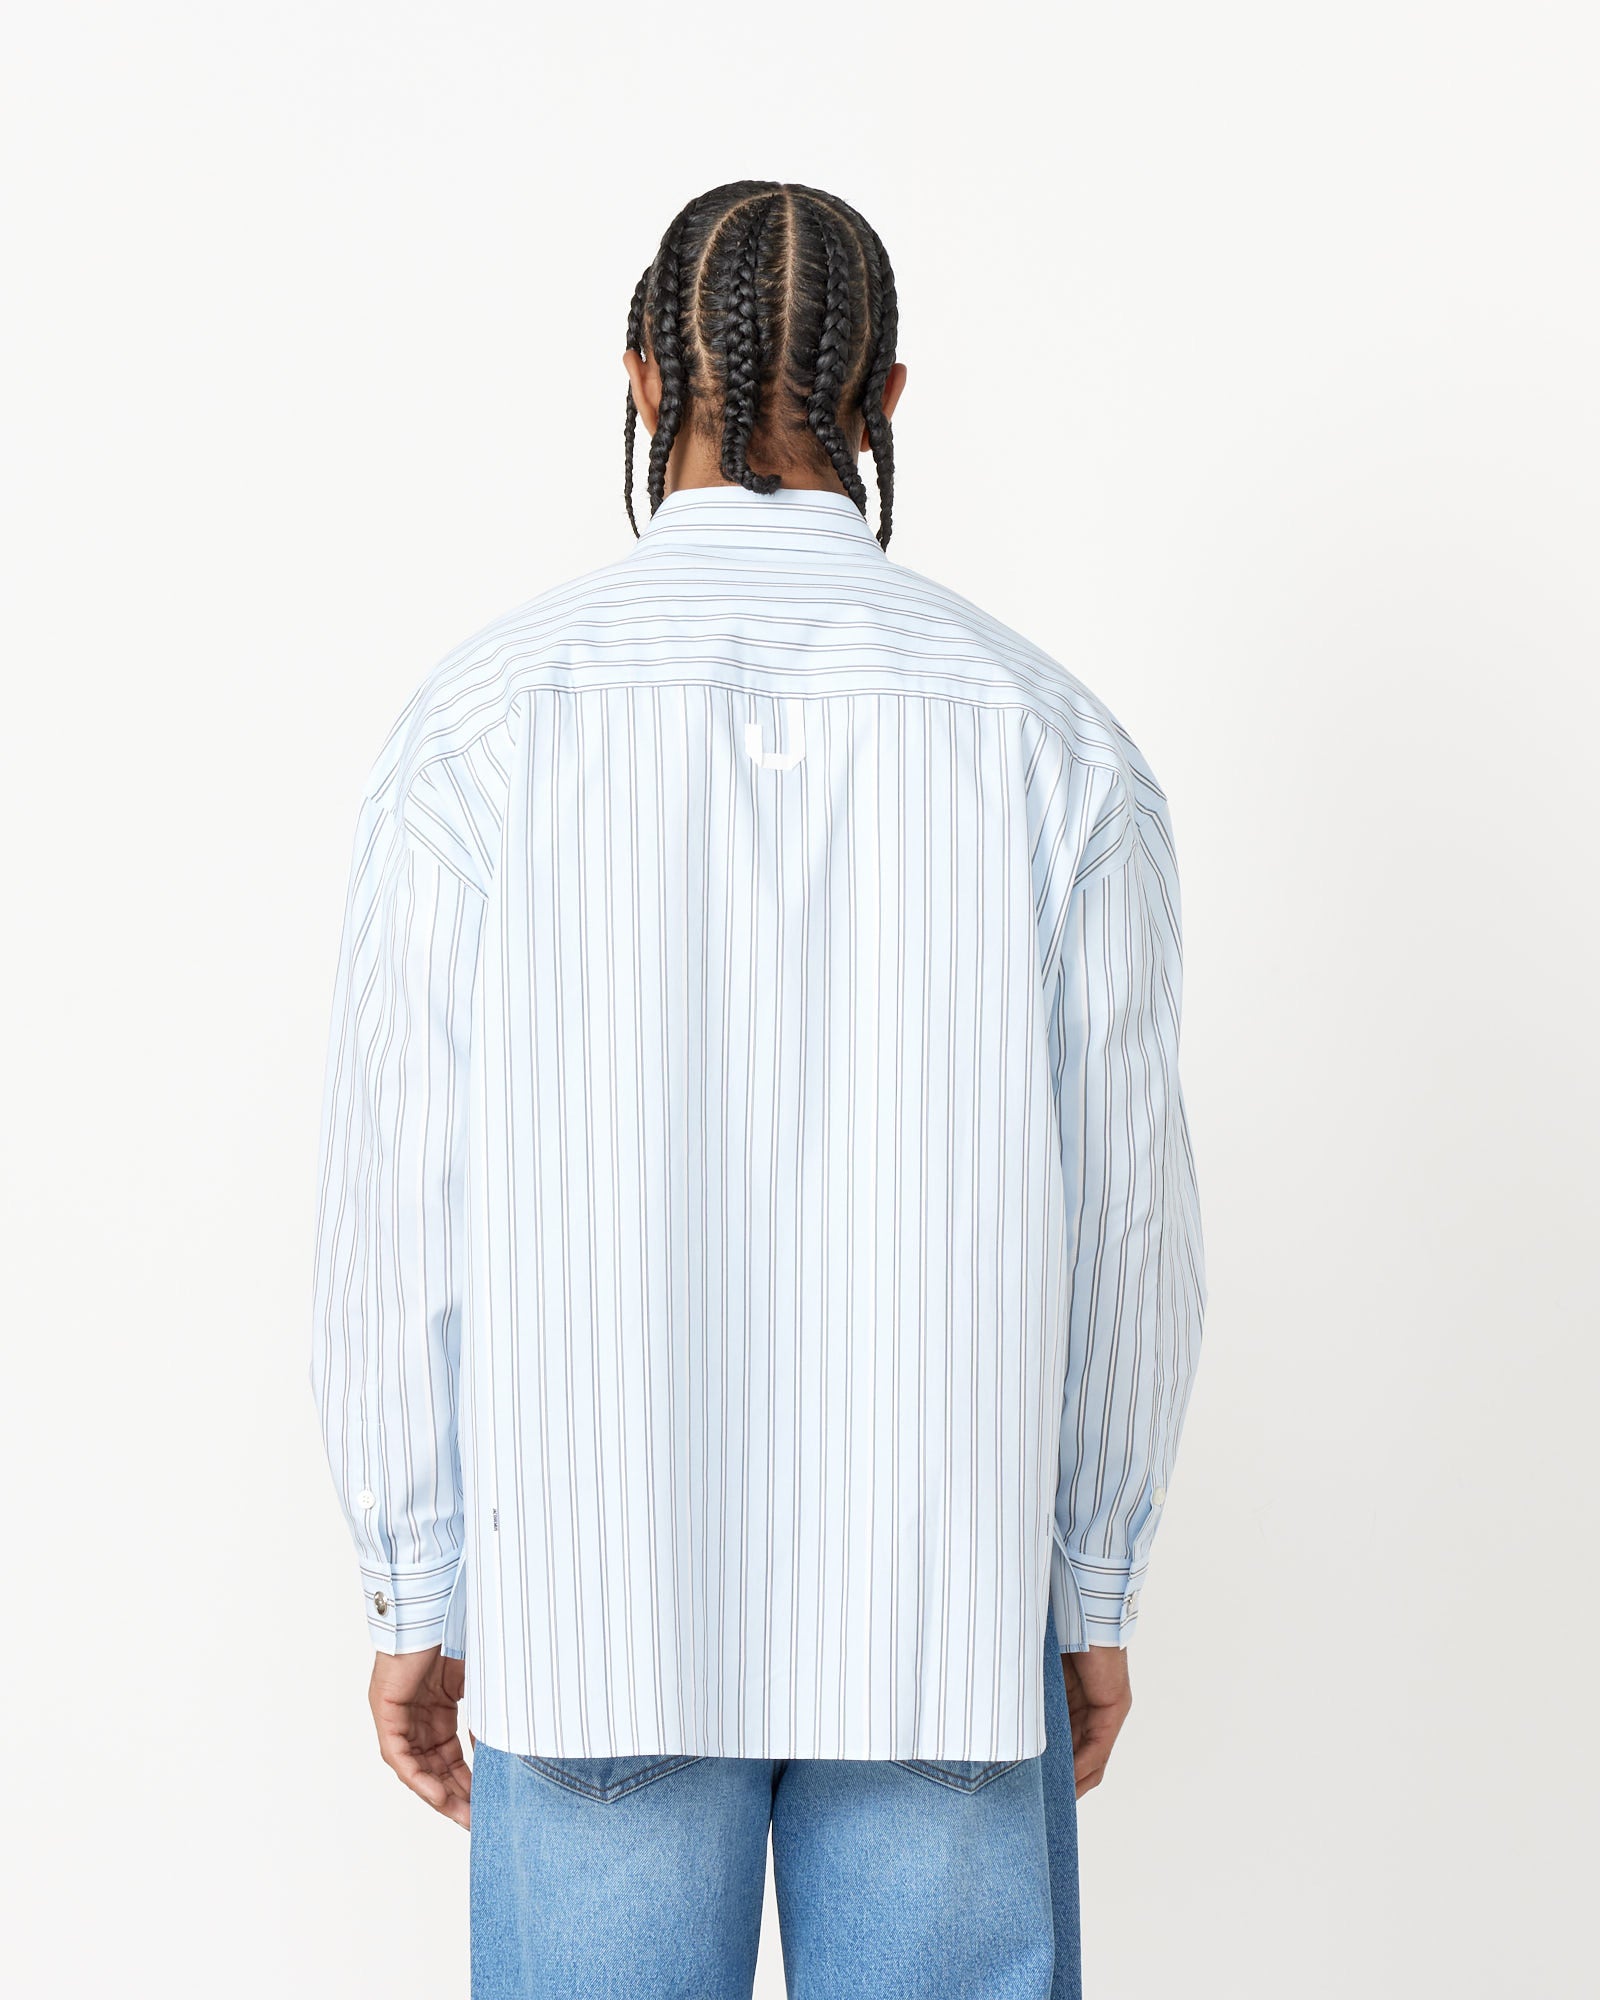 La Chemise Manches Longue Shirt in Blue Stripe